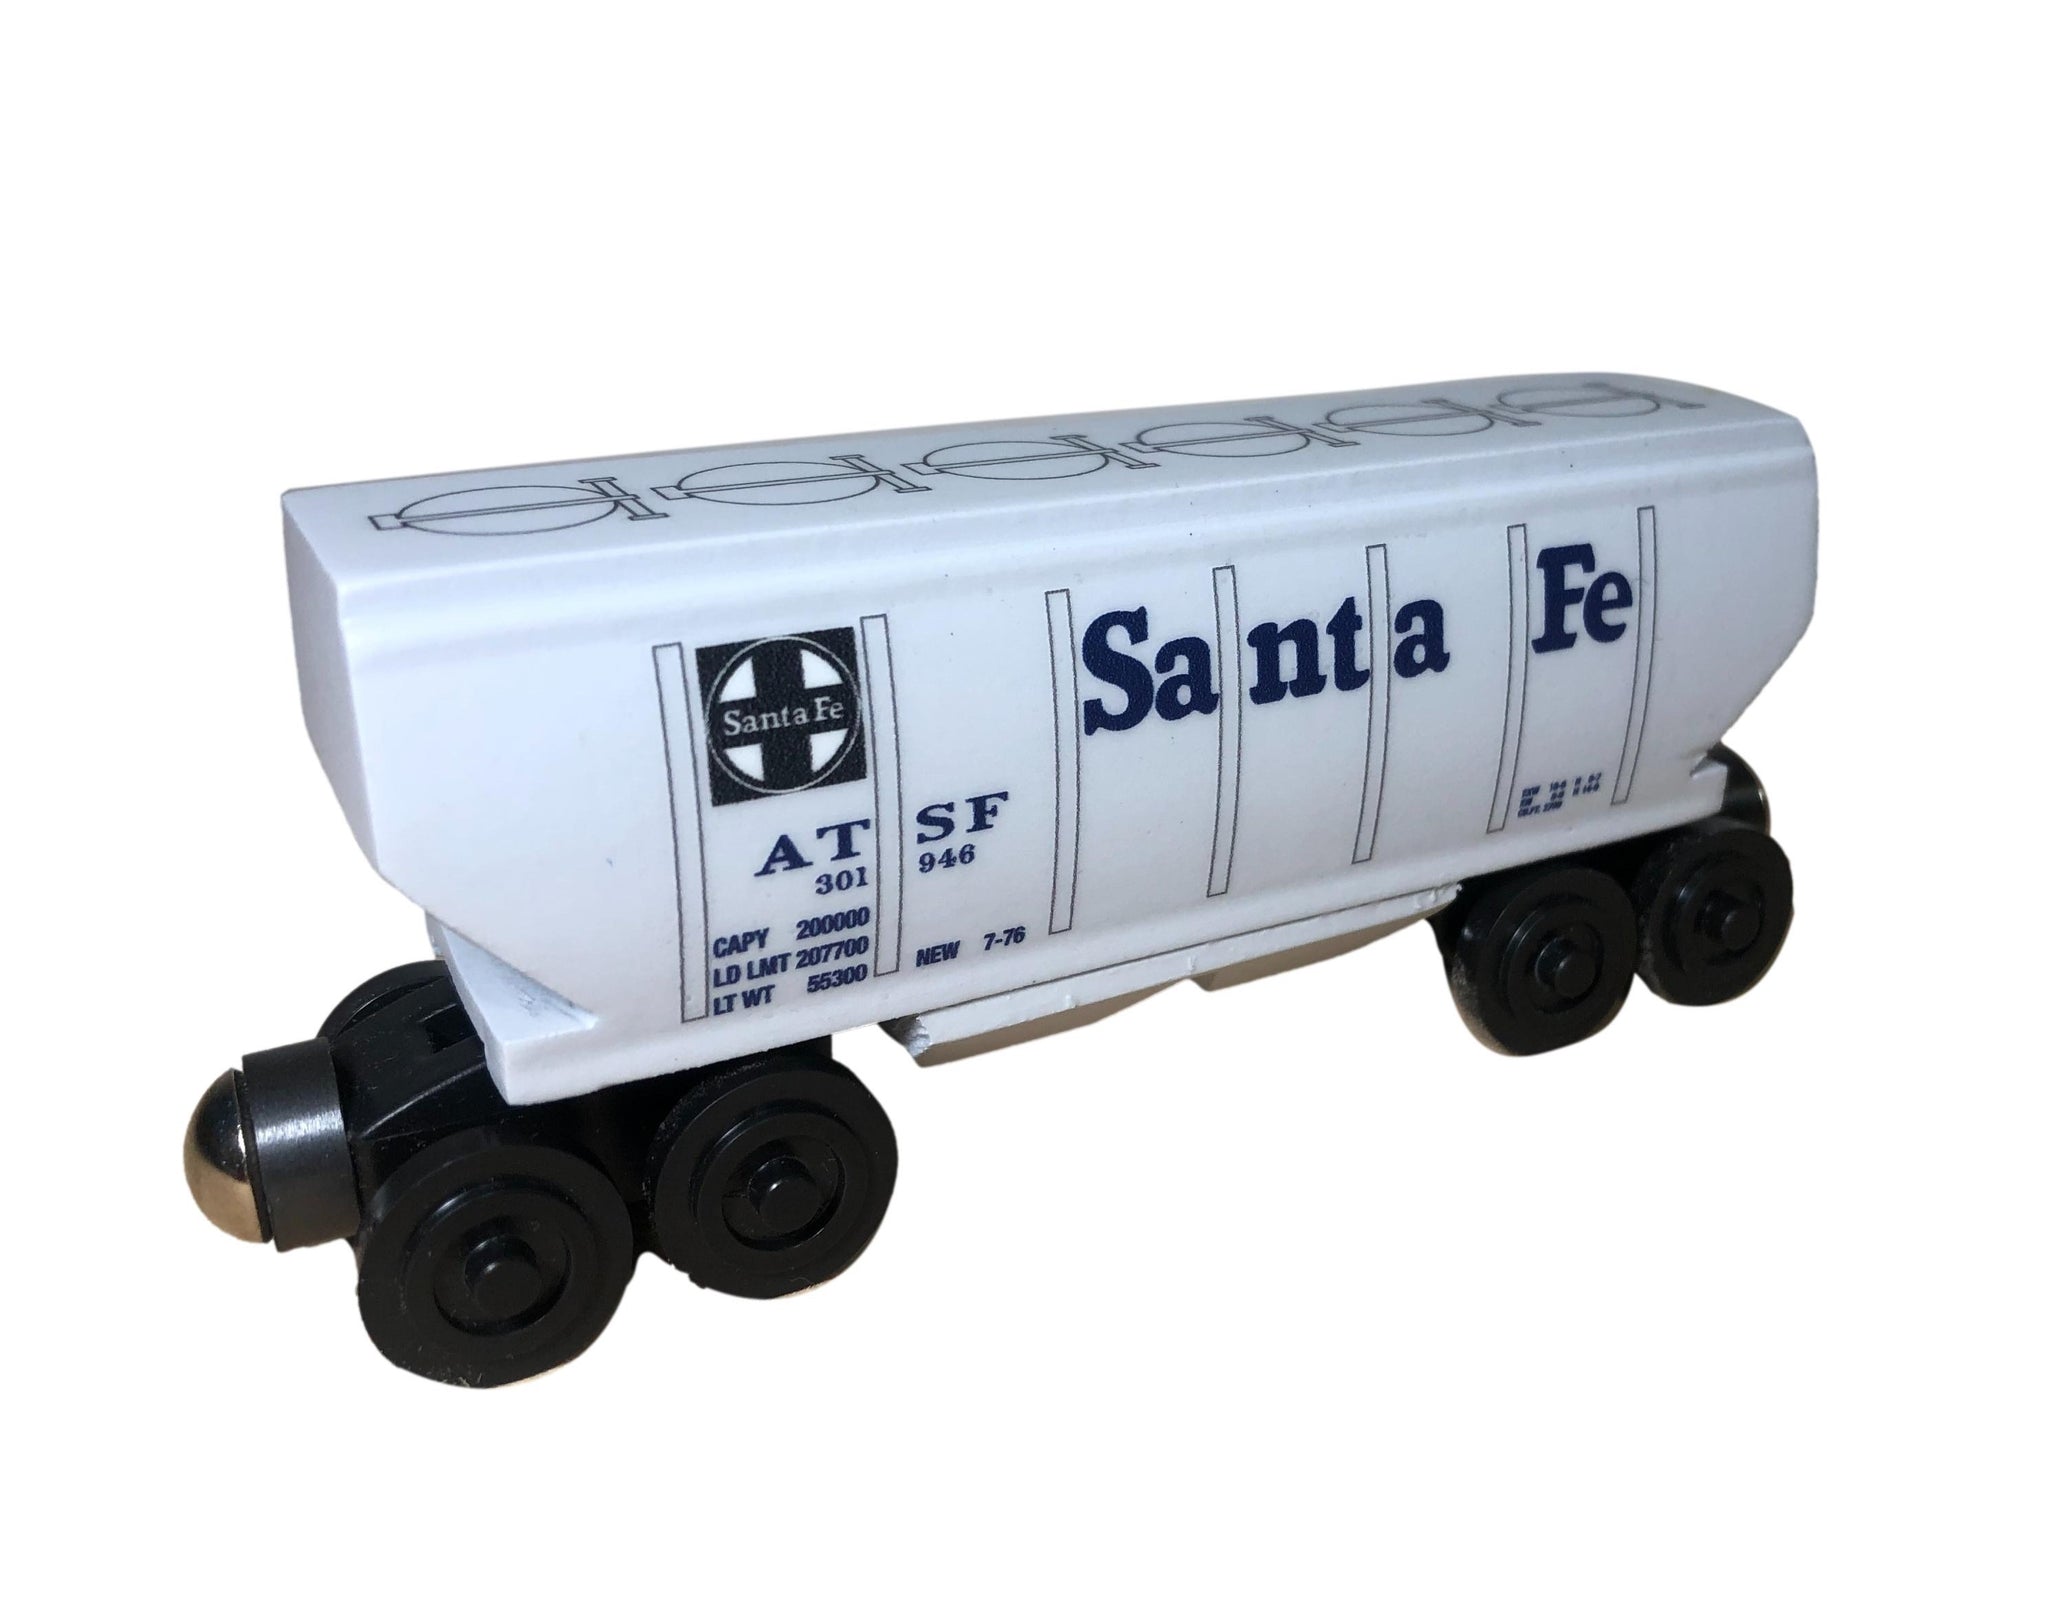 Santa Fe Cement Train Car 5"